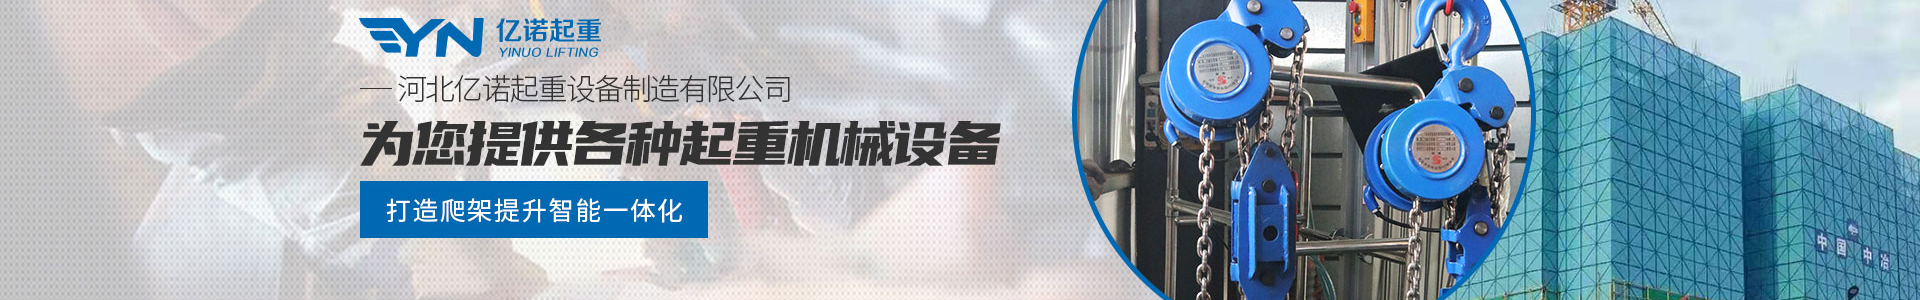 爬架专用电动葫芦_产品展示_亿诺起重有限公司